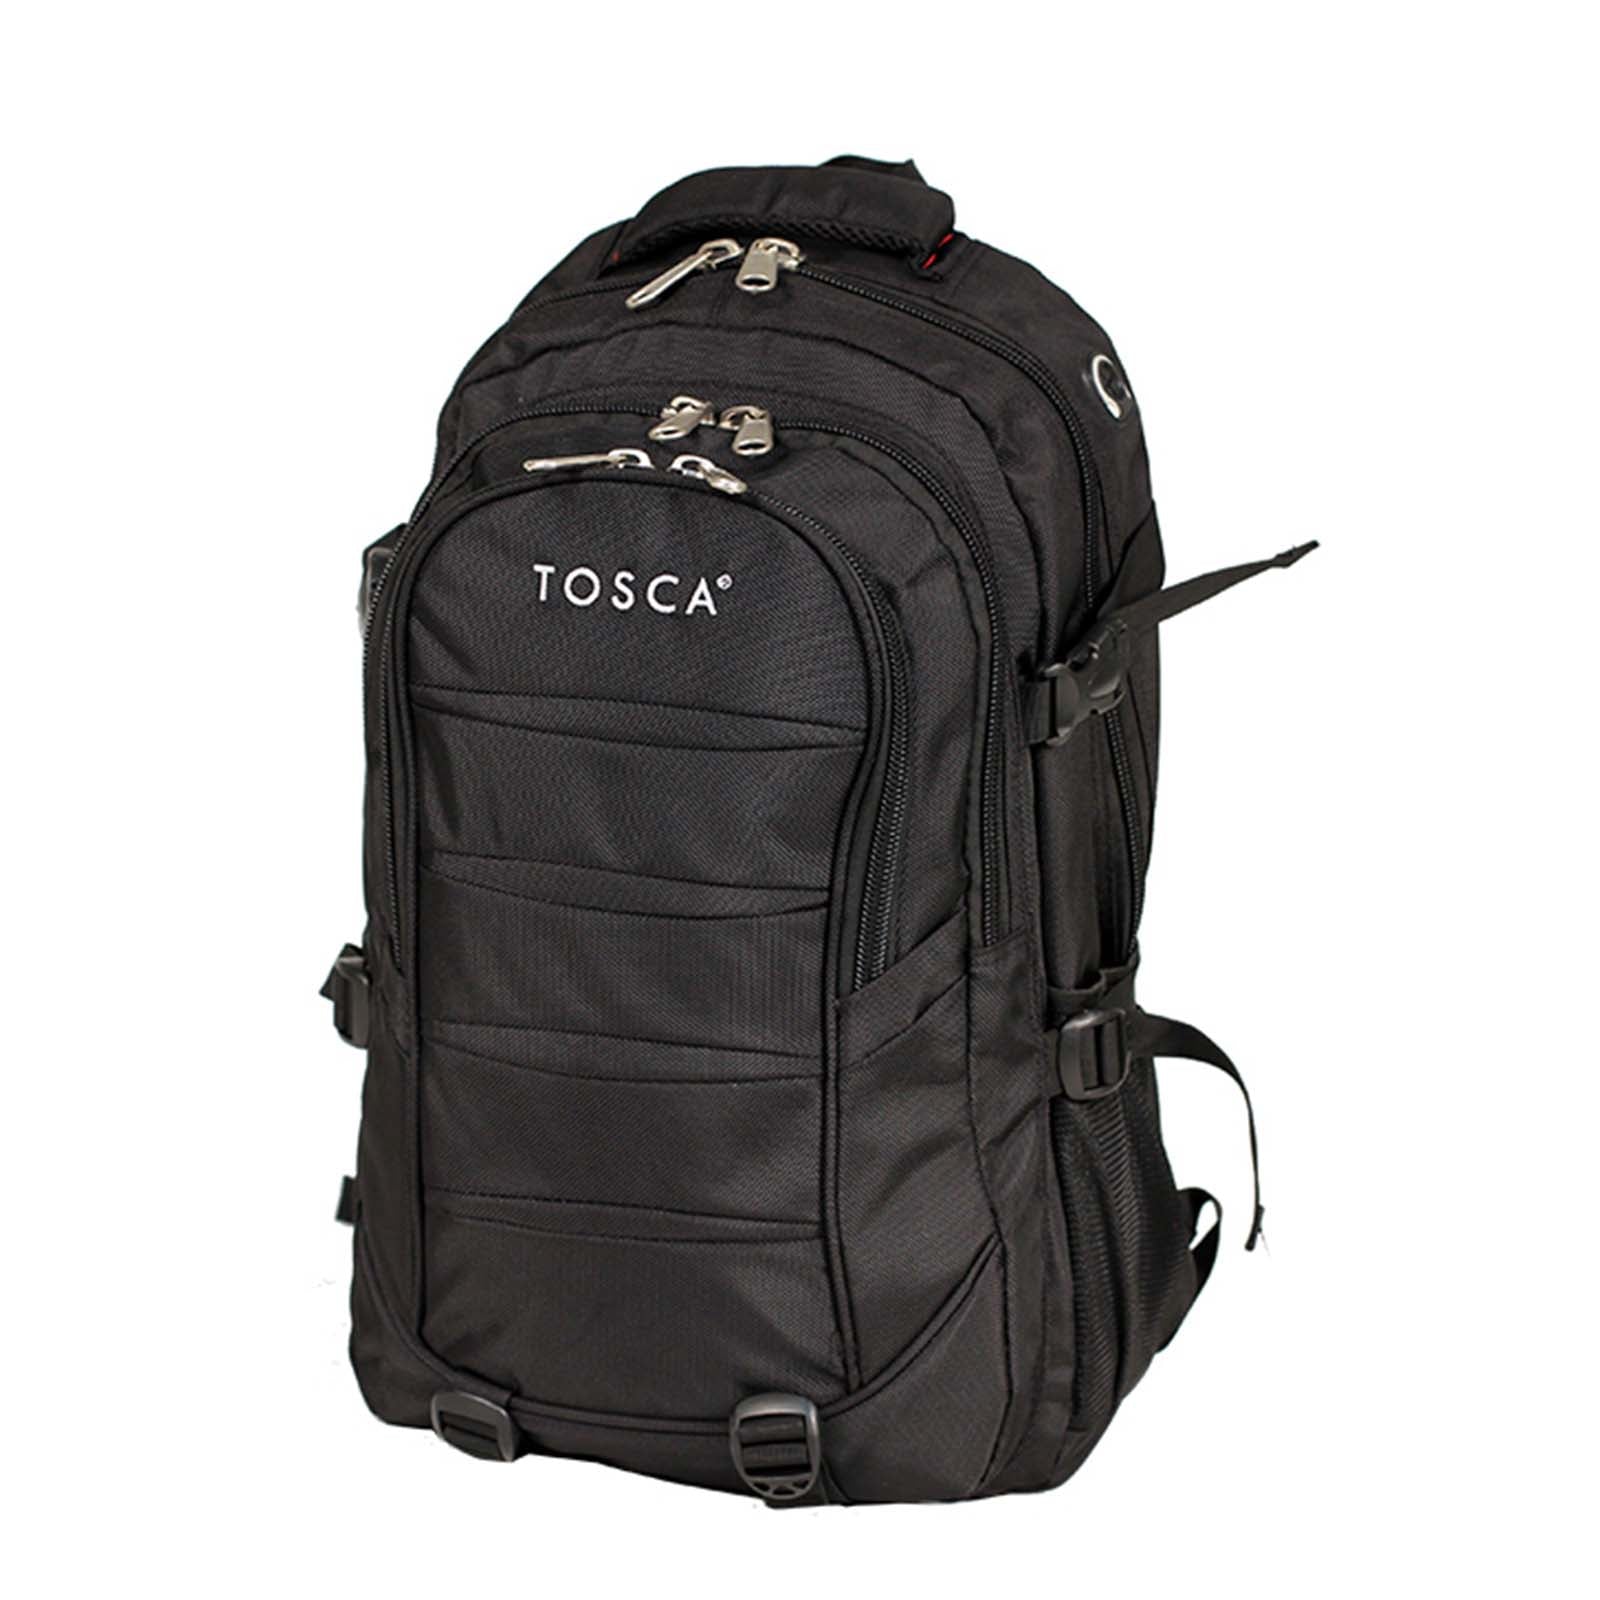 Tosca_Laptop_Backpack_48L_Black_Front.jpg